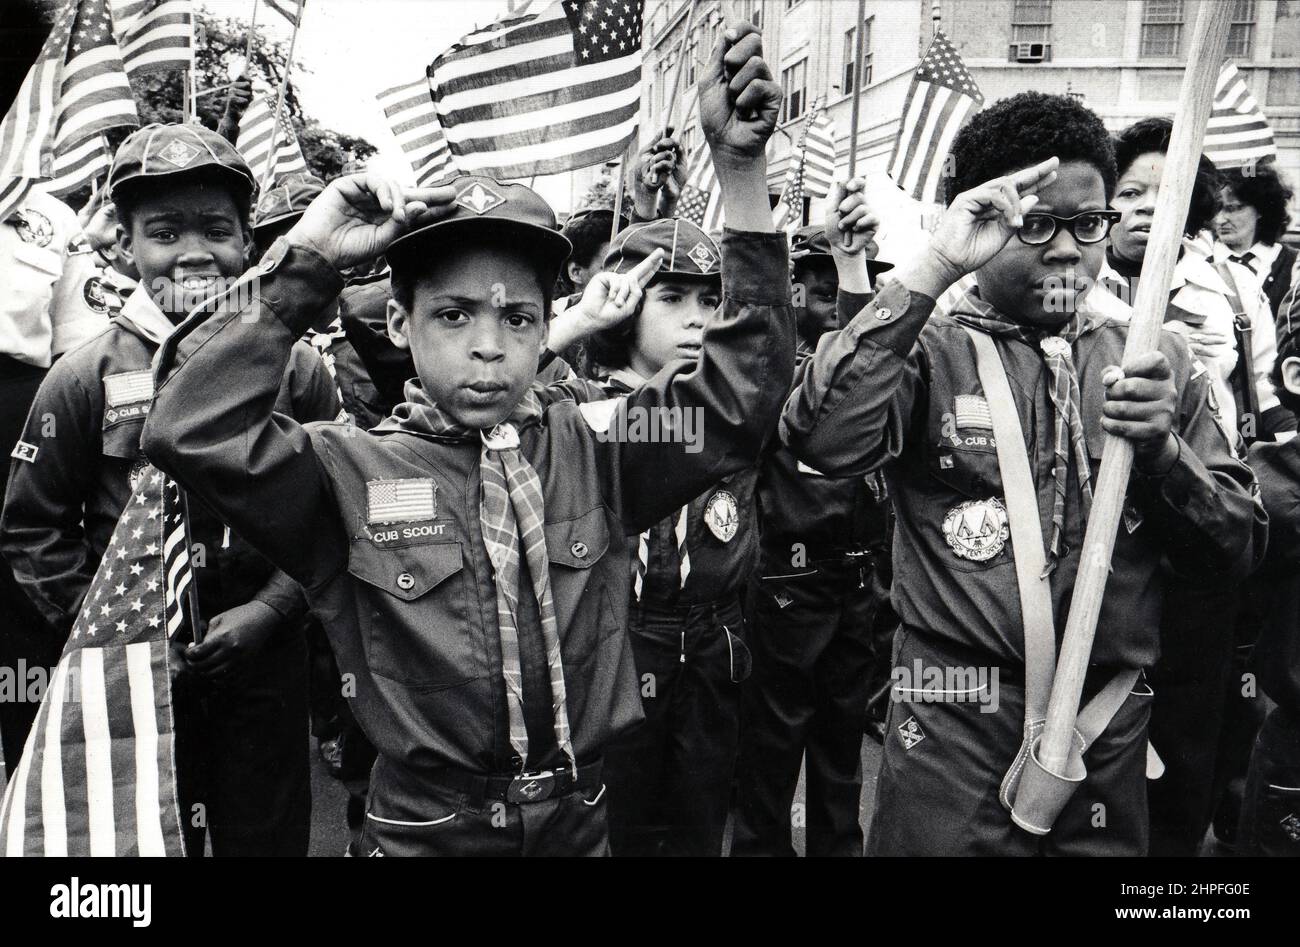 Au milieu d'une mer de drapeaux, les scouts patriotiques de Cub saluent leurs 3 doigts. Lors d'une parade de la journée des anciens combattants à Manhattan, New York vers 1976. Banque D'Images